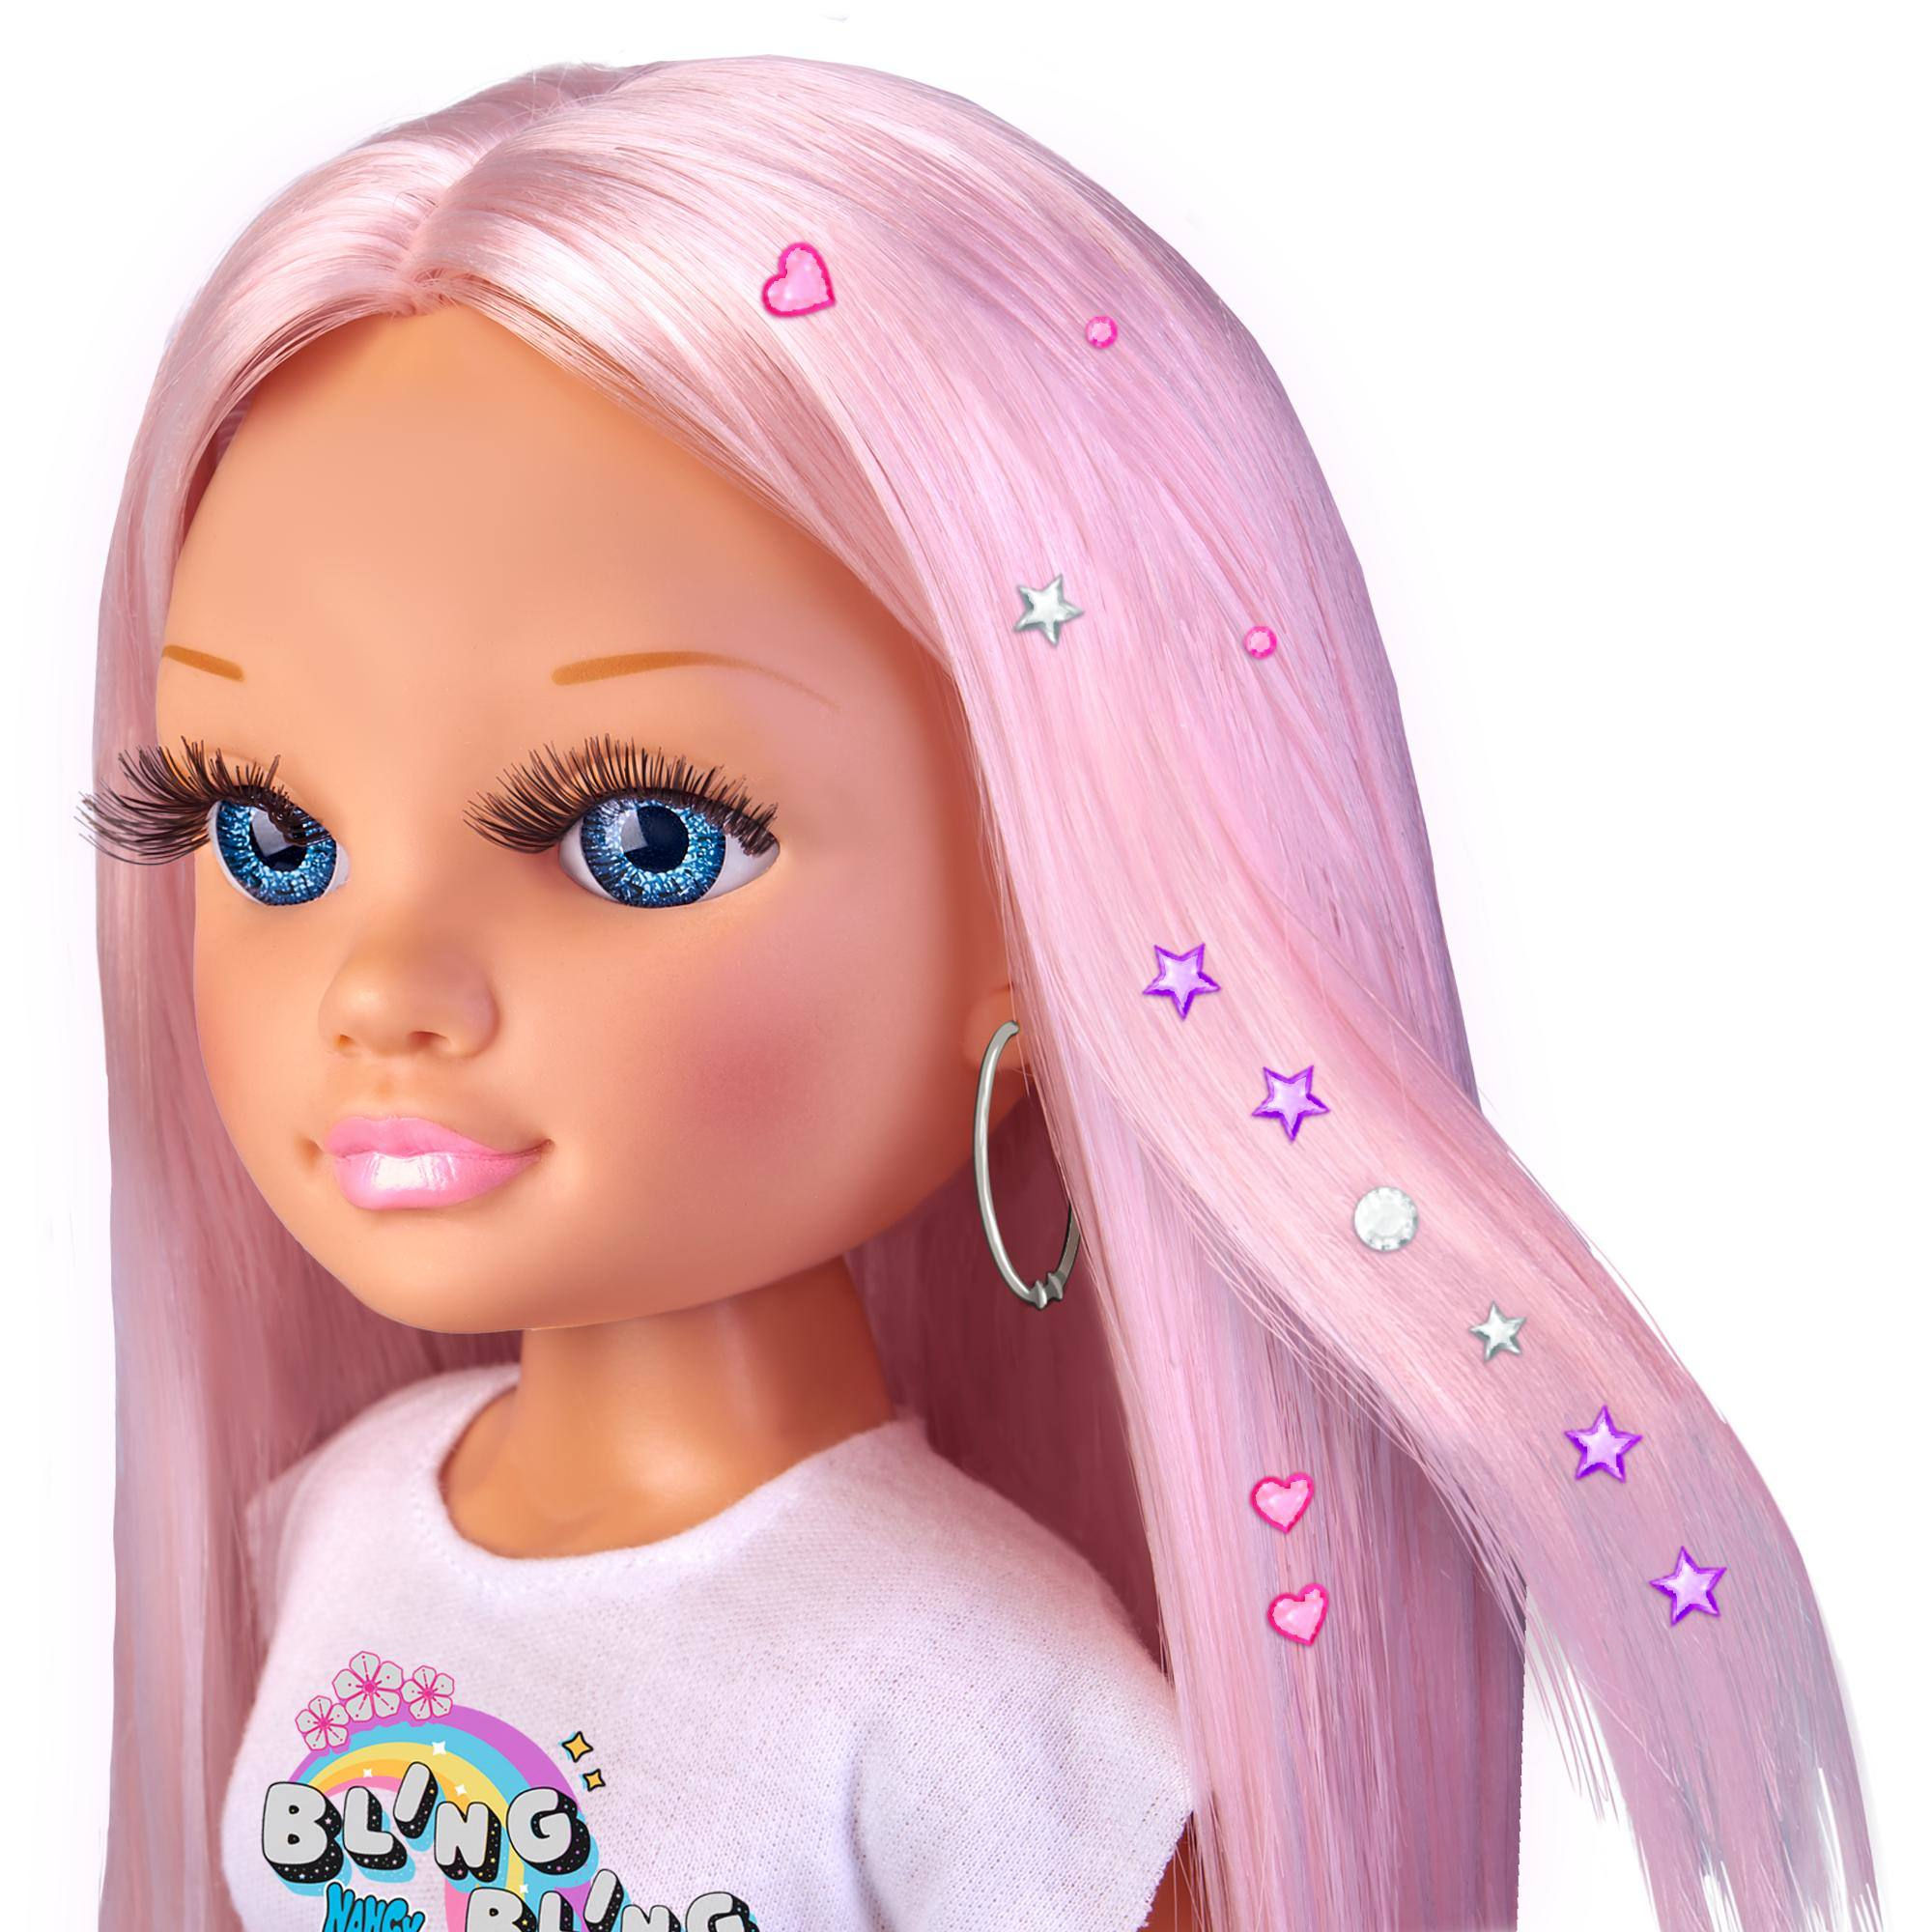 Nancy, un giorno con look brillante, capelli rosa, con gemme colorate e applicatore - NANCY